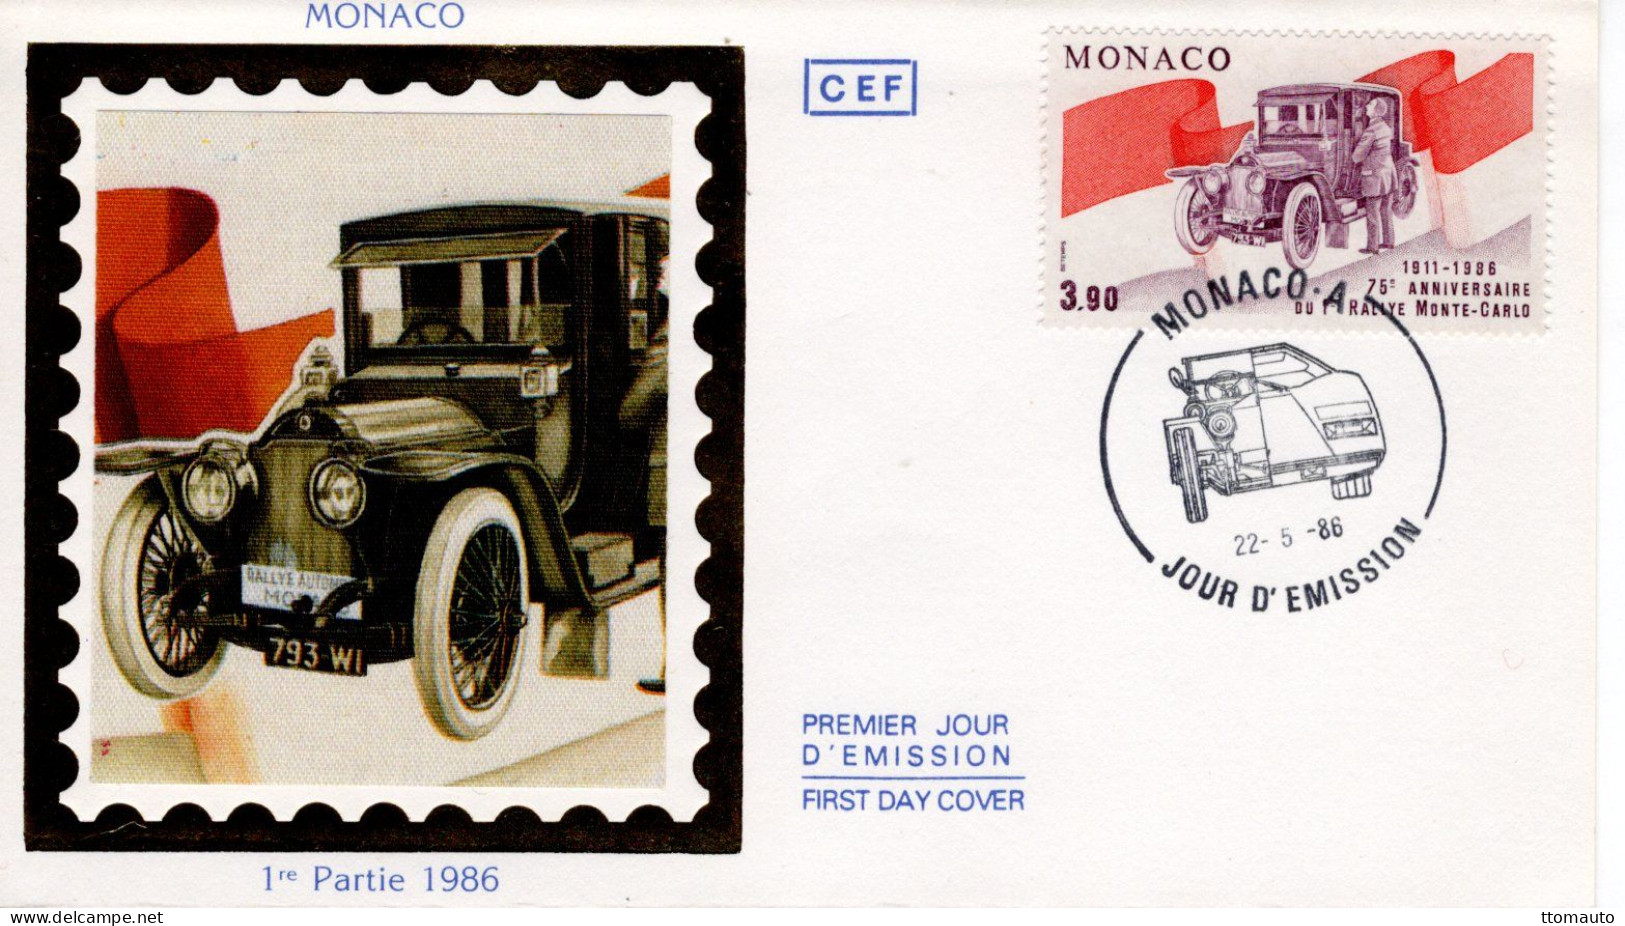 Monaco - Monte-Carlo Rallye 1911 -  Vainqueur Henri Rougier - Turcat-Méry -  Envelope FDC Prémier Jour - Automobile